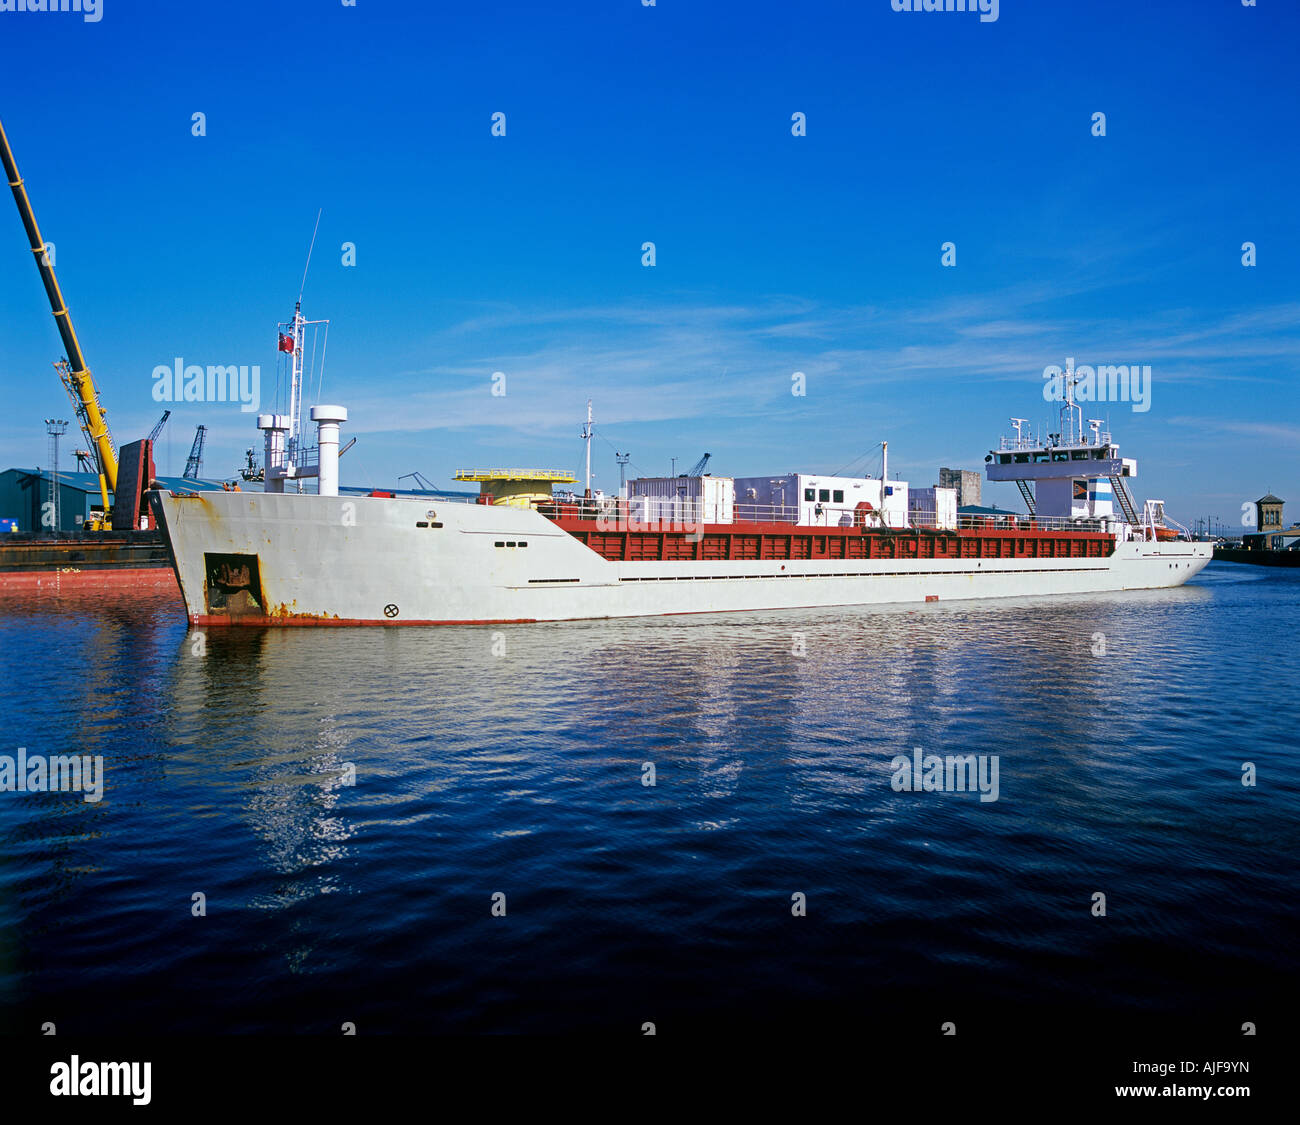 A cargo ship at leith harbour Stock Photo